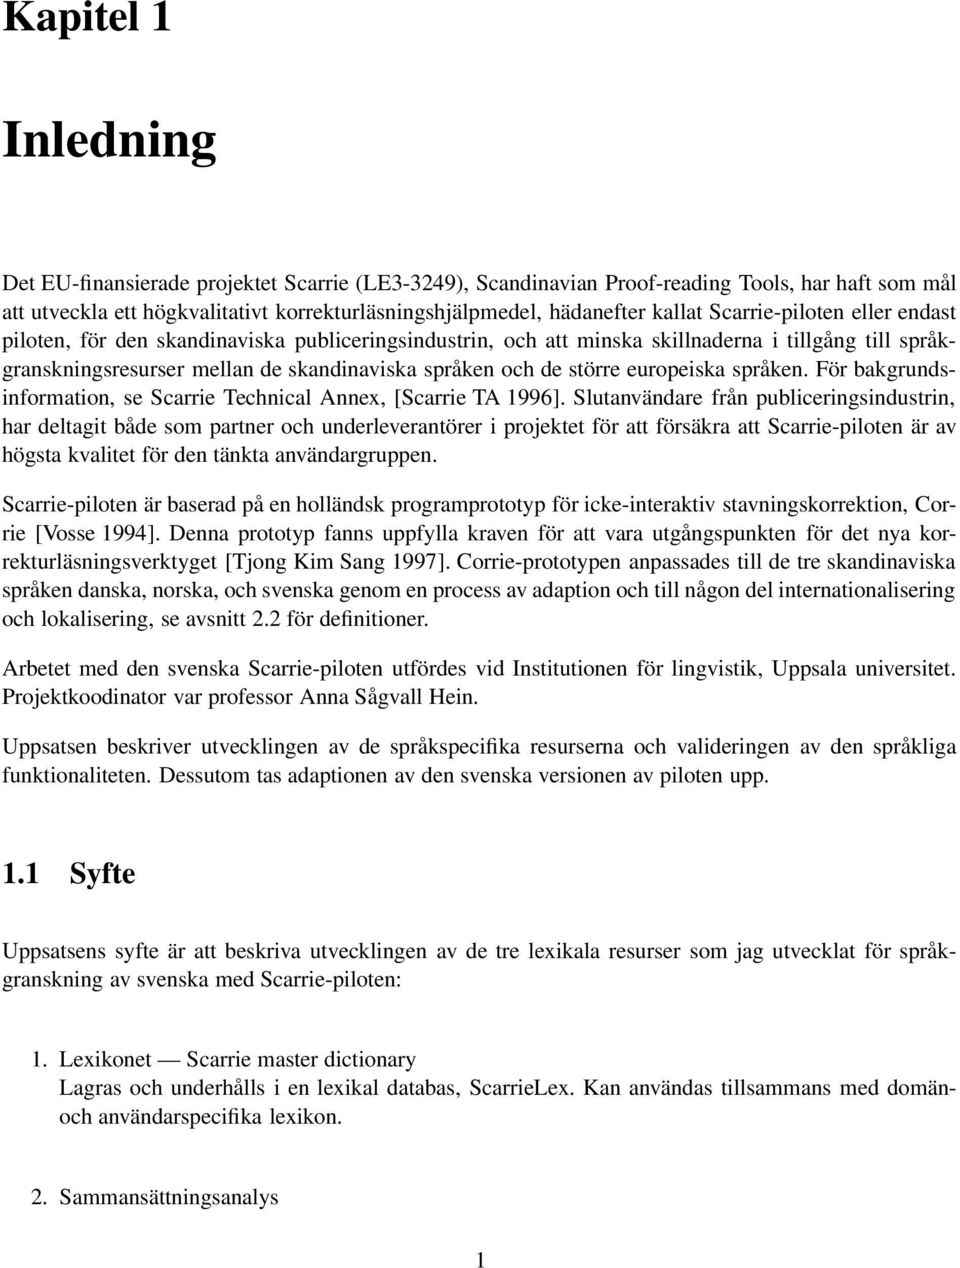 europeiska språken. För bakgrundsinformation, se Scarrie Technical Annex, [Scarrie TA 1996].